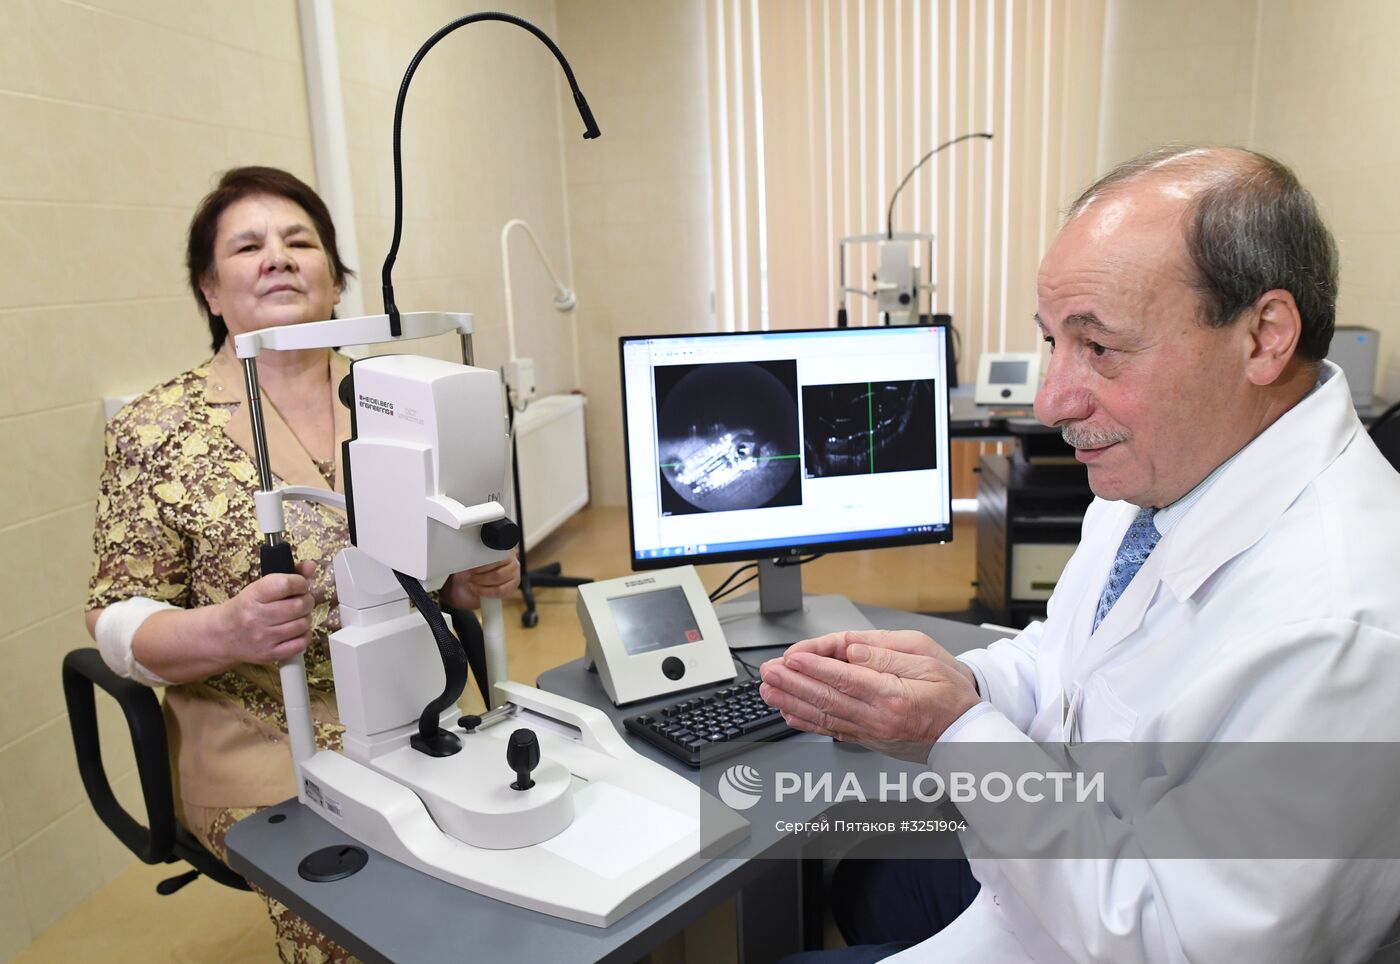 Бионический глаз установили пациентке в научно-клиническом центре отоларингологии РФ